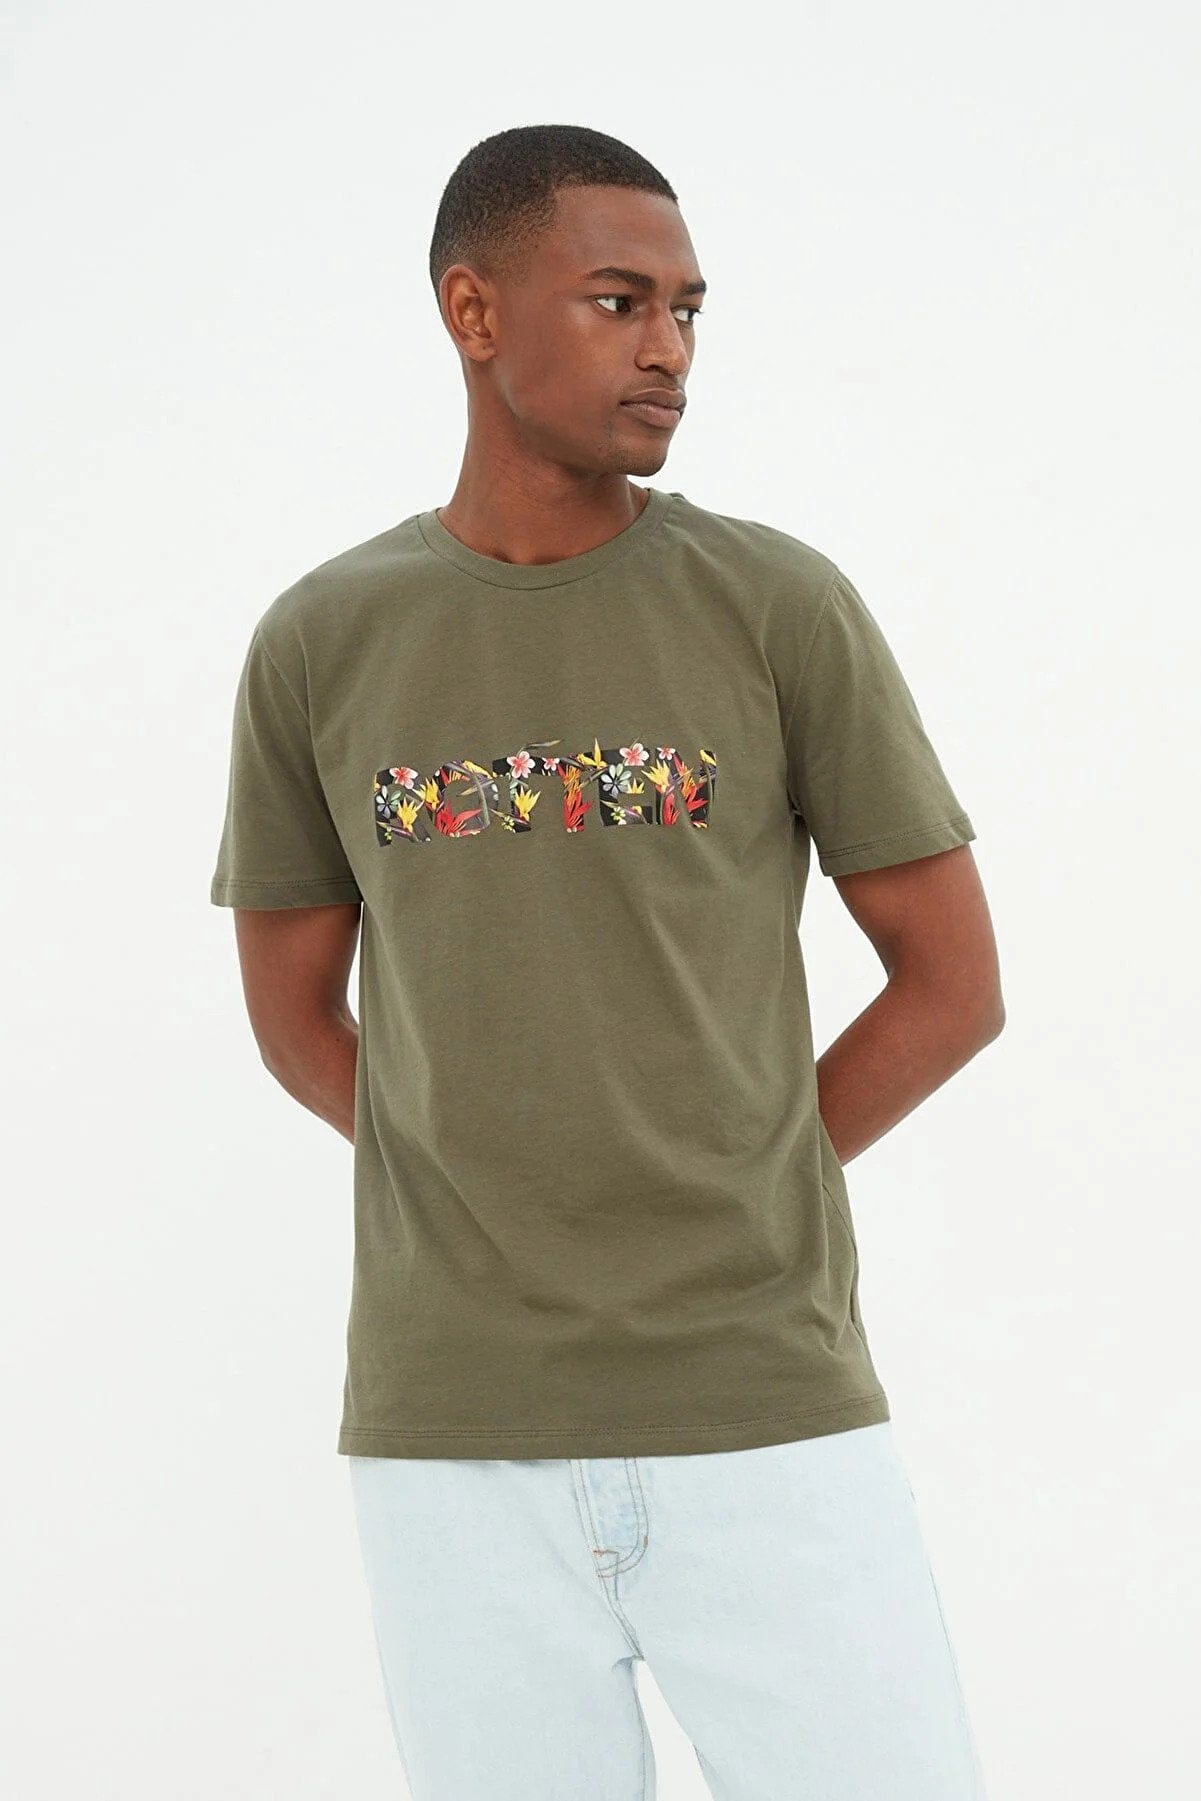 Rotten Flowered Designed Trendyol T-shirt